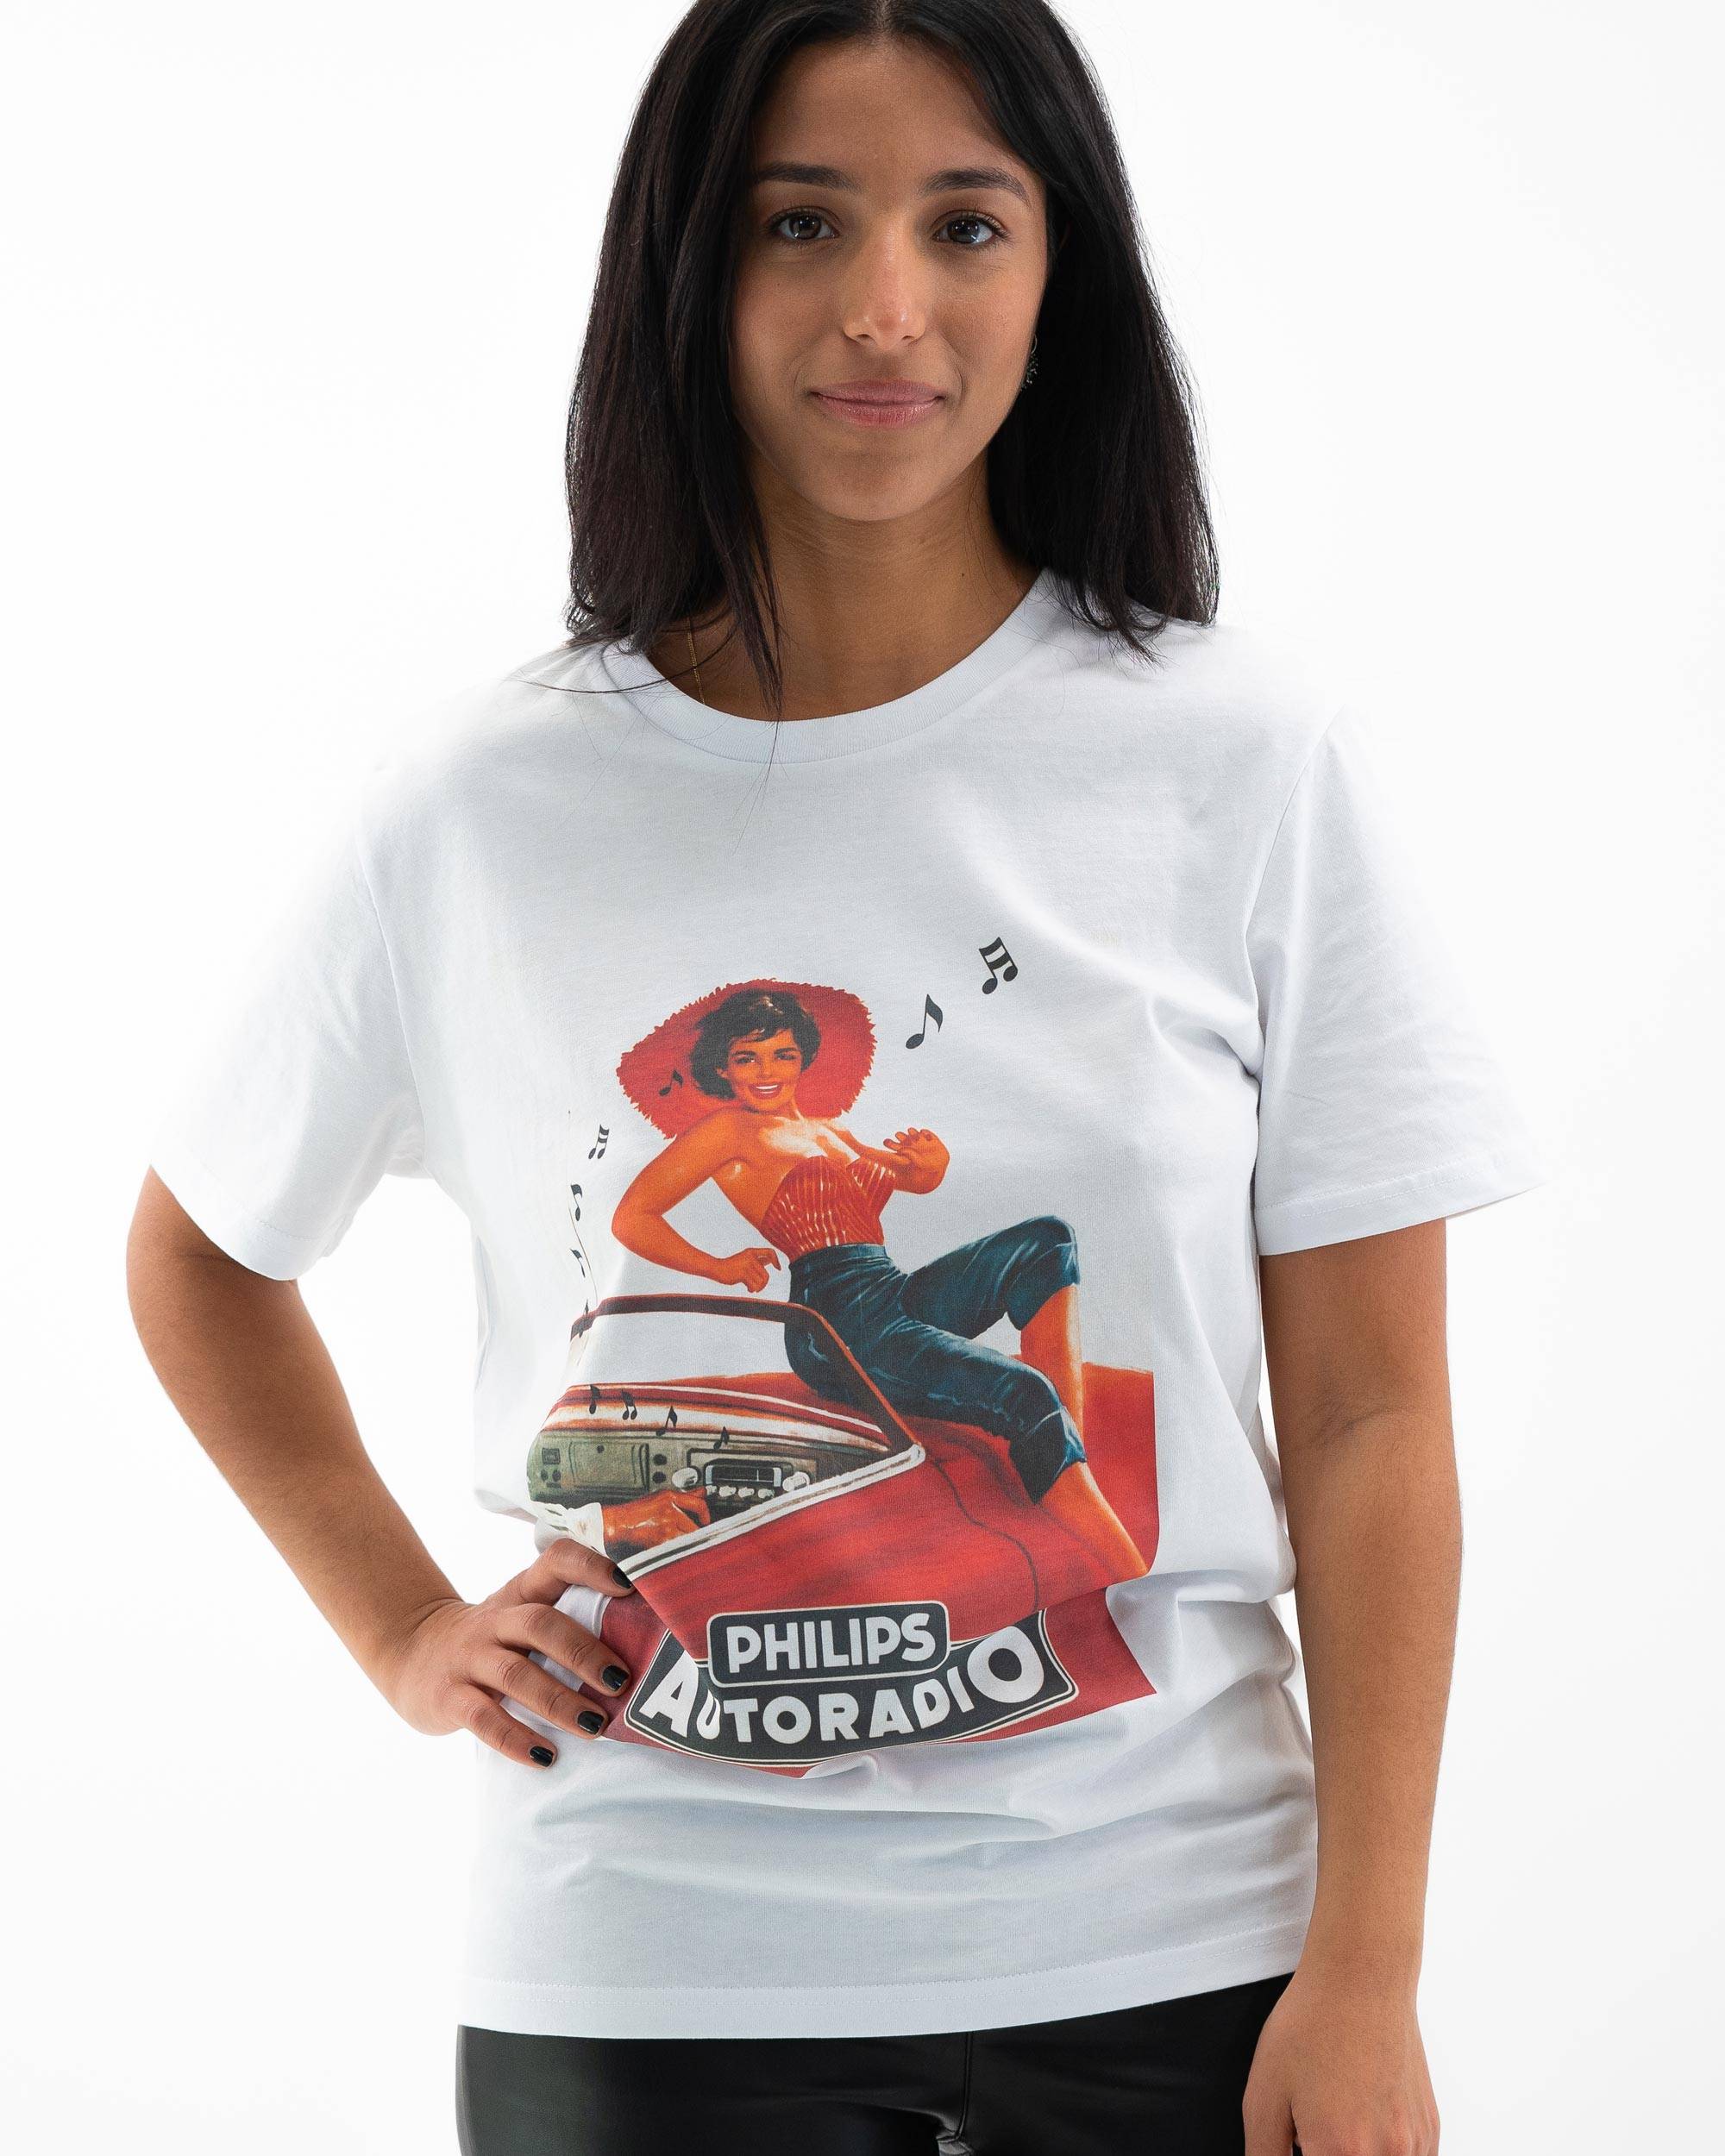 T-shirt Philips Autoradio Grafitee